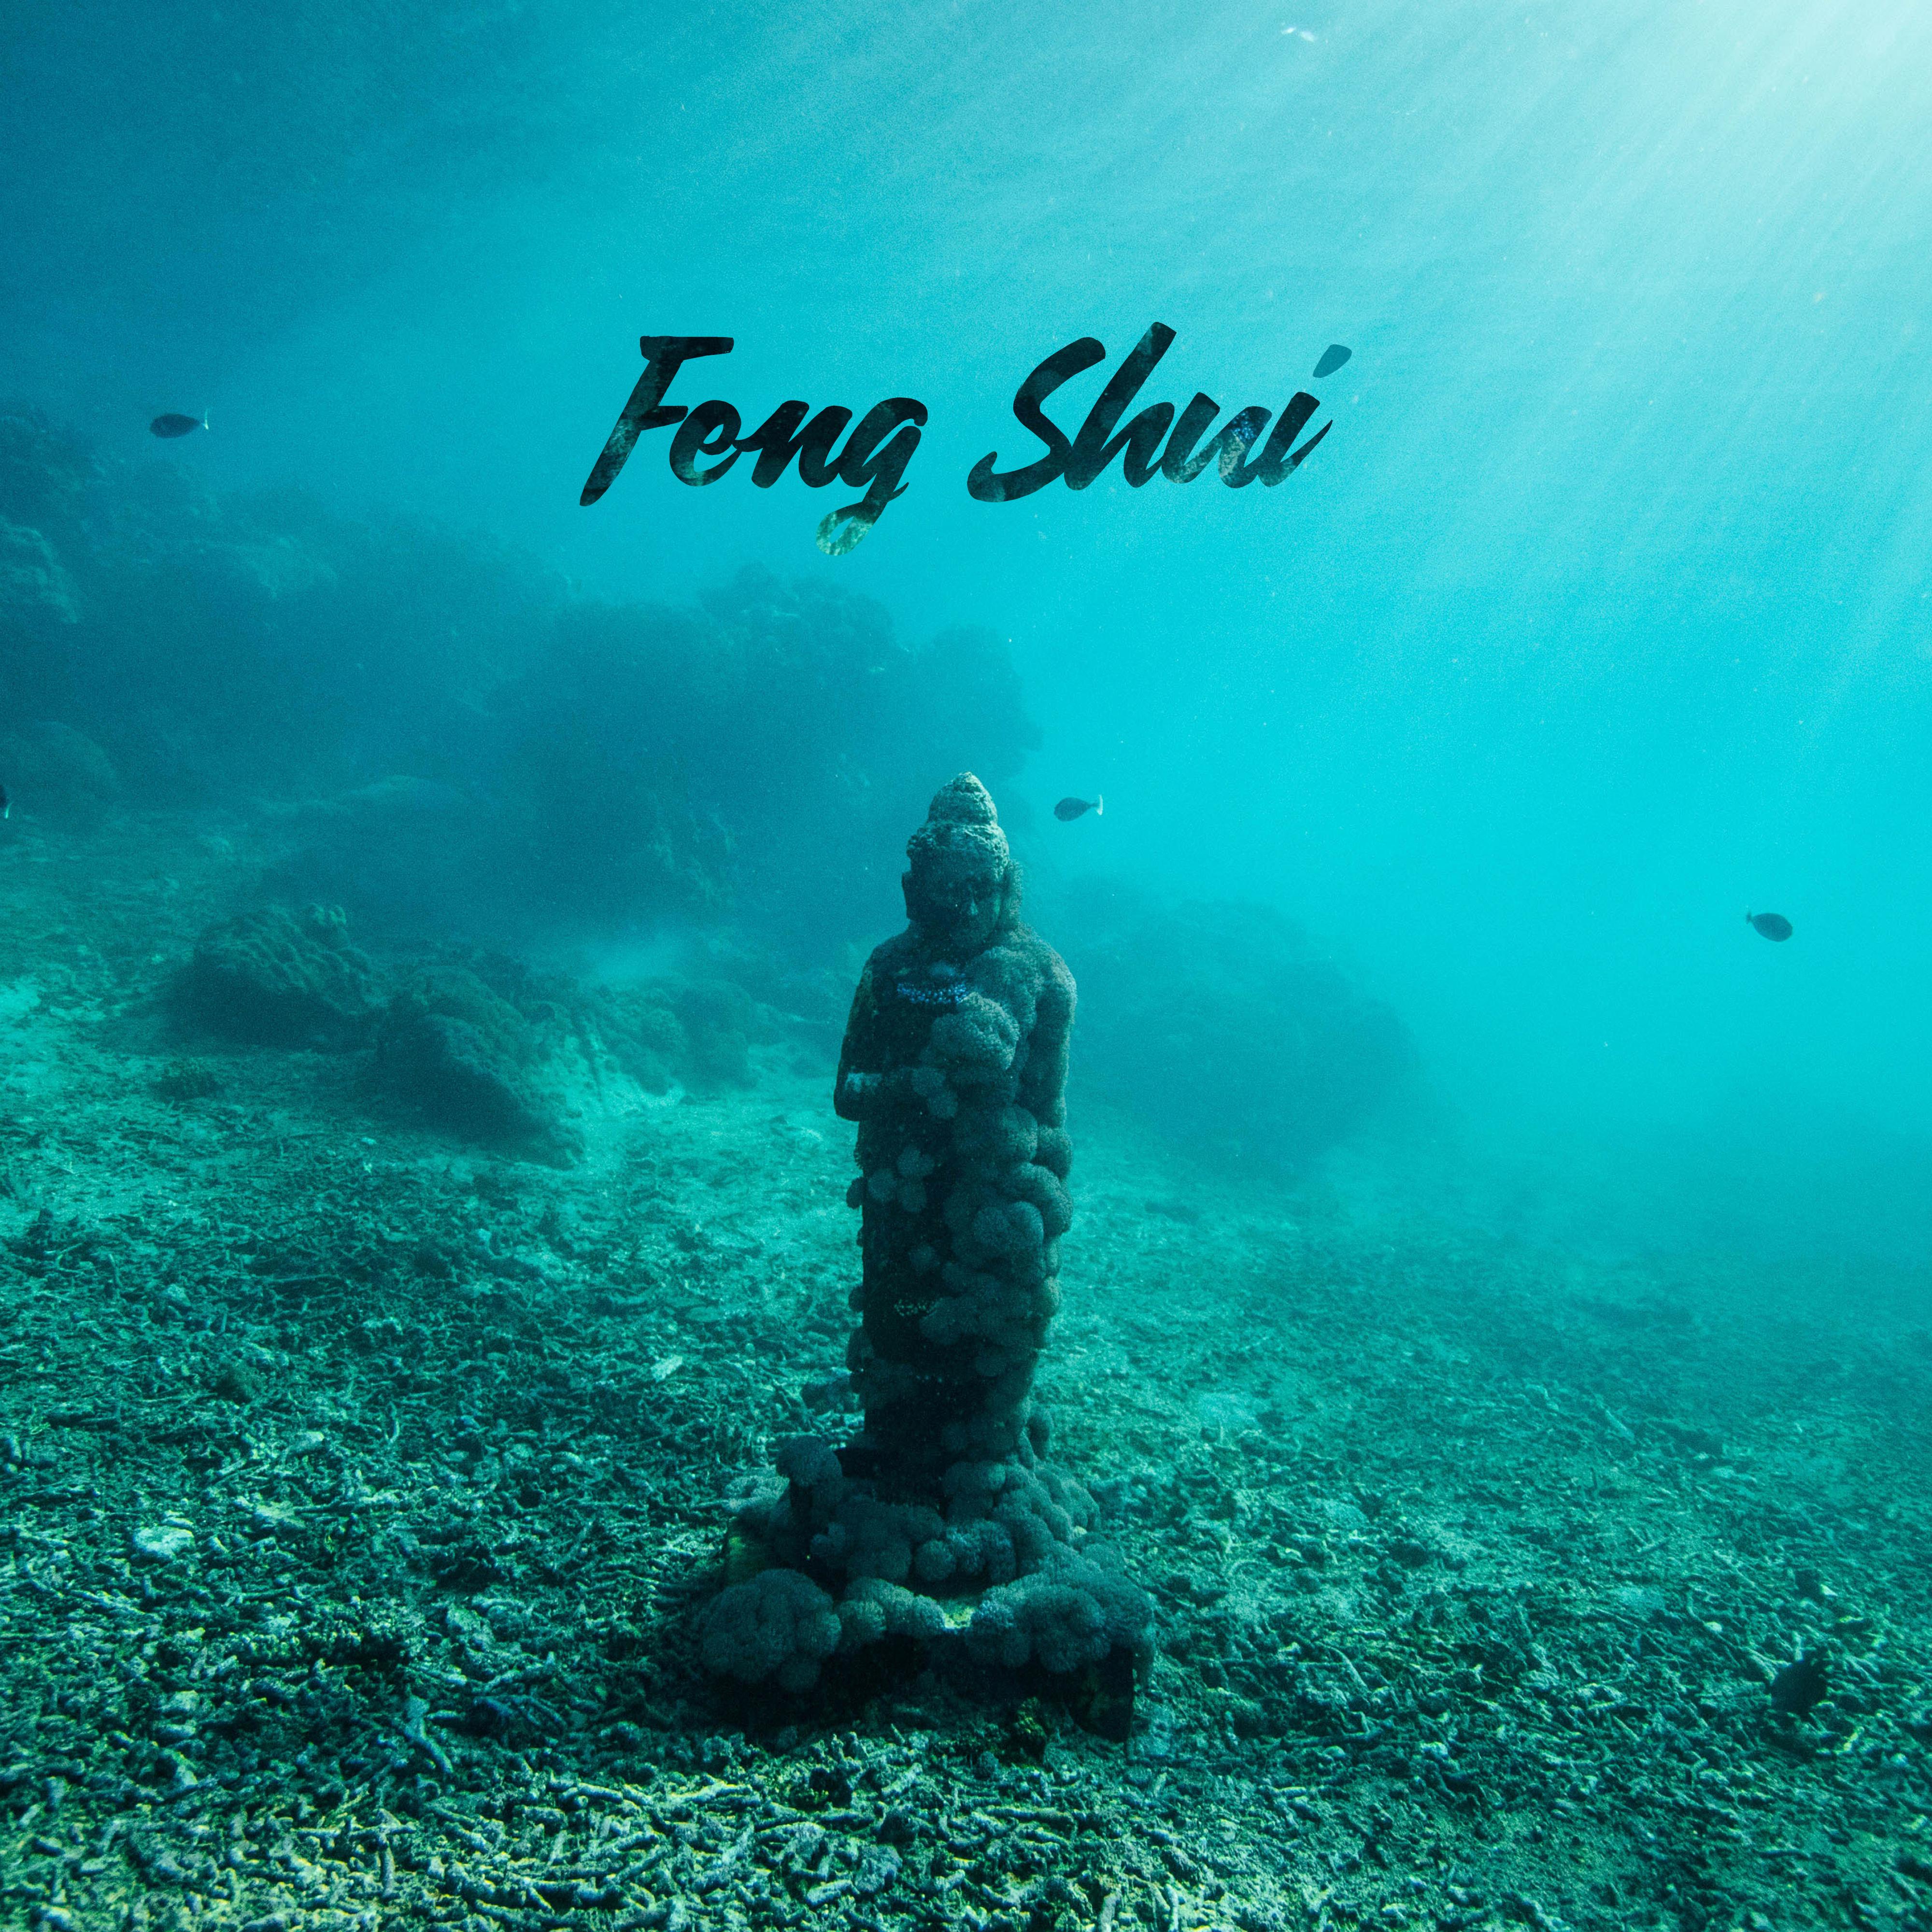 Feng Shui – Deep Meditation & Relax